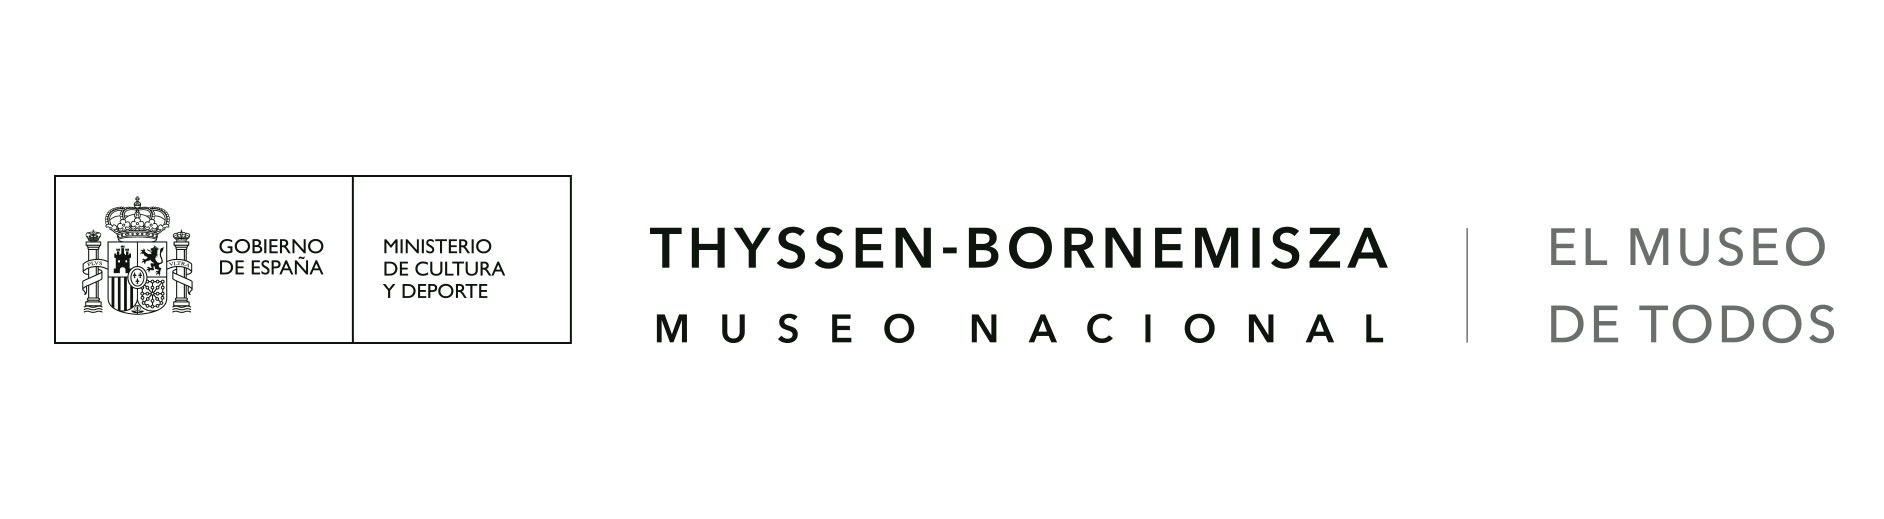 logo Museo Nacional Thyssen-Bornemisza